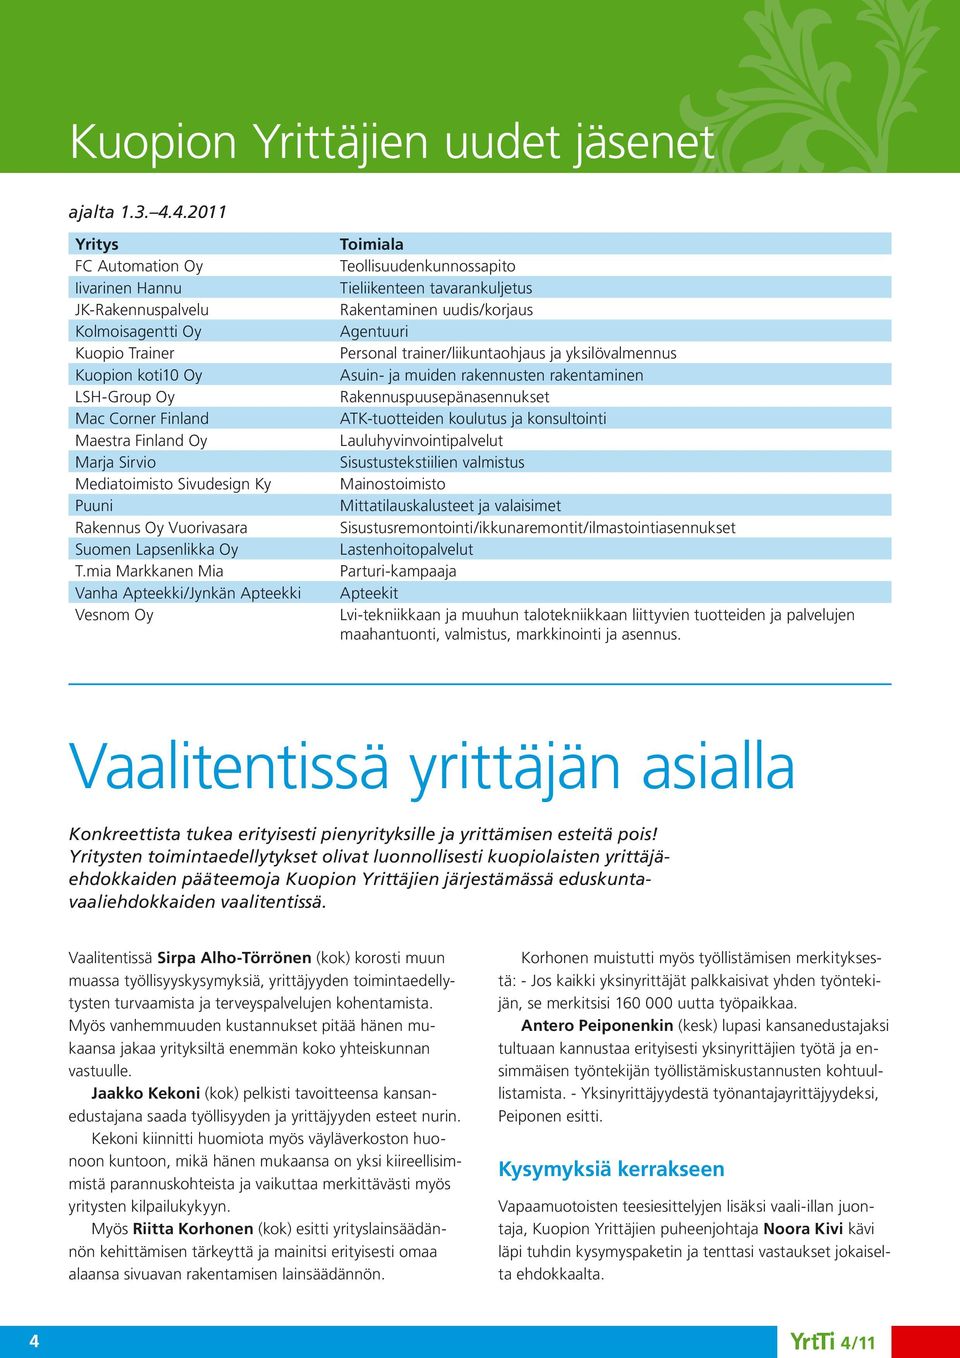 Sivudesign Ky Puuni Rakennus Oy Vuorivasara Suomen Lapsenlikka Oy T.